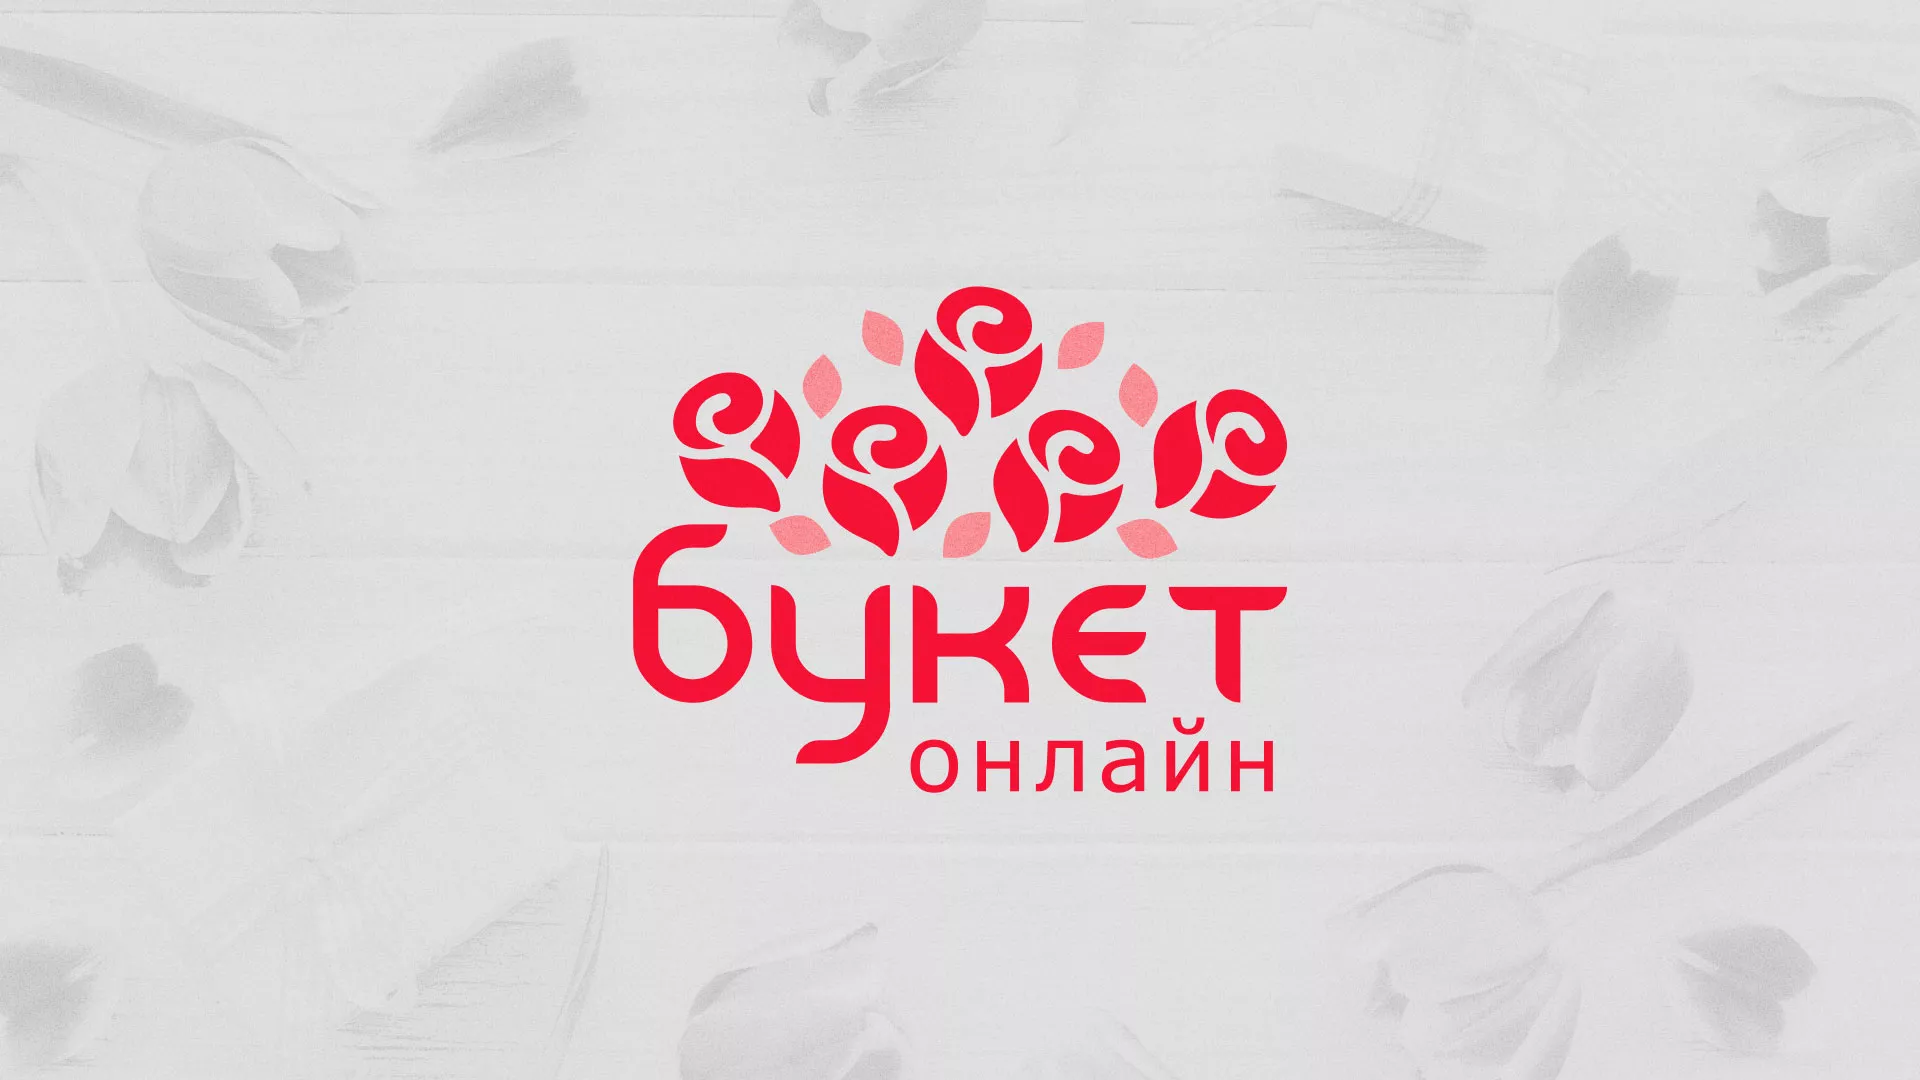 Создание интернет-магазина «Букет-онлайн» по цветам в Усть-Джегуте